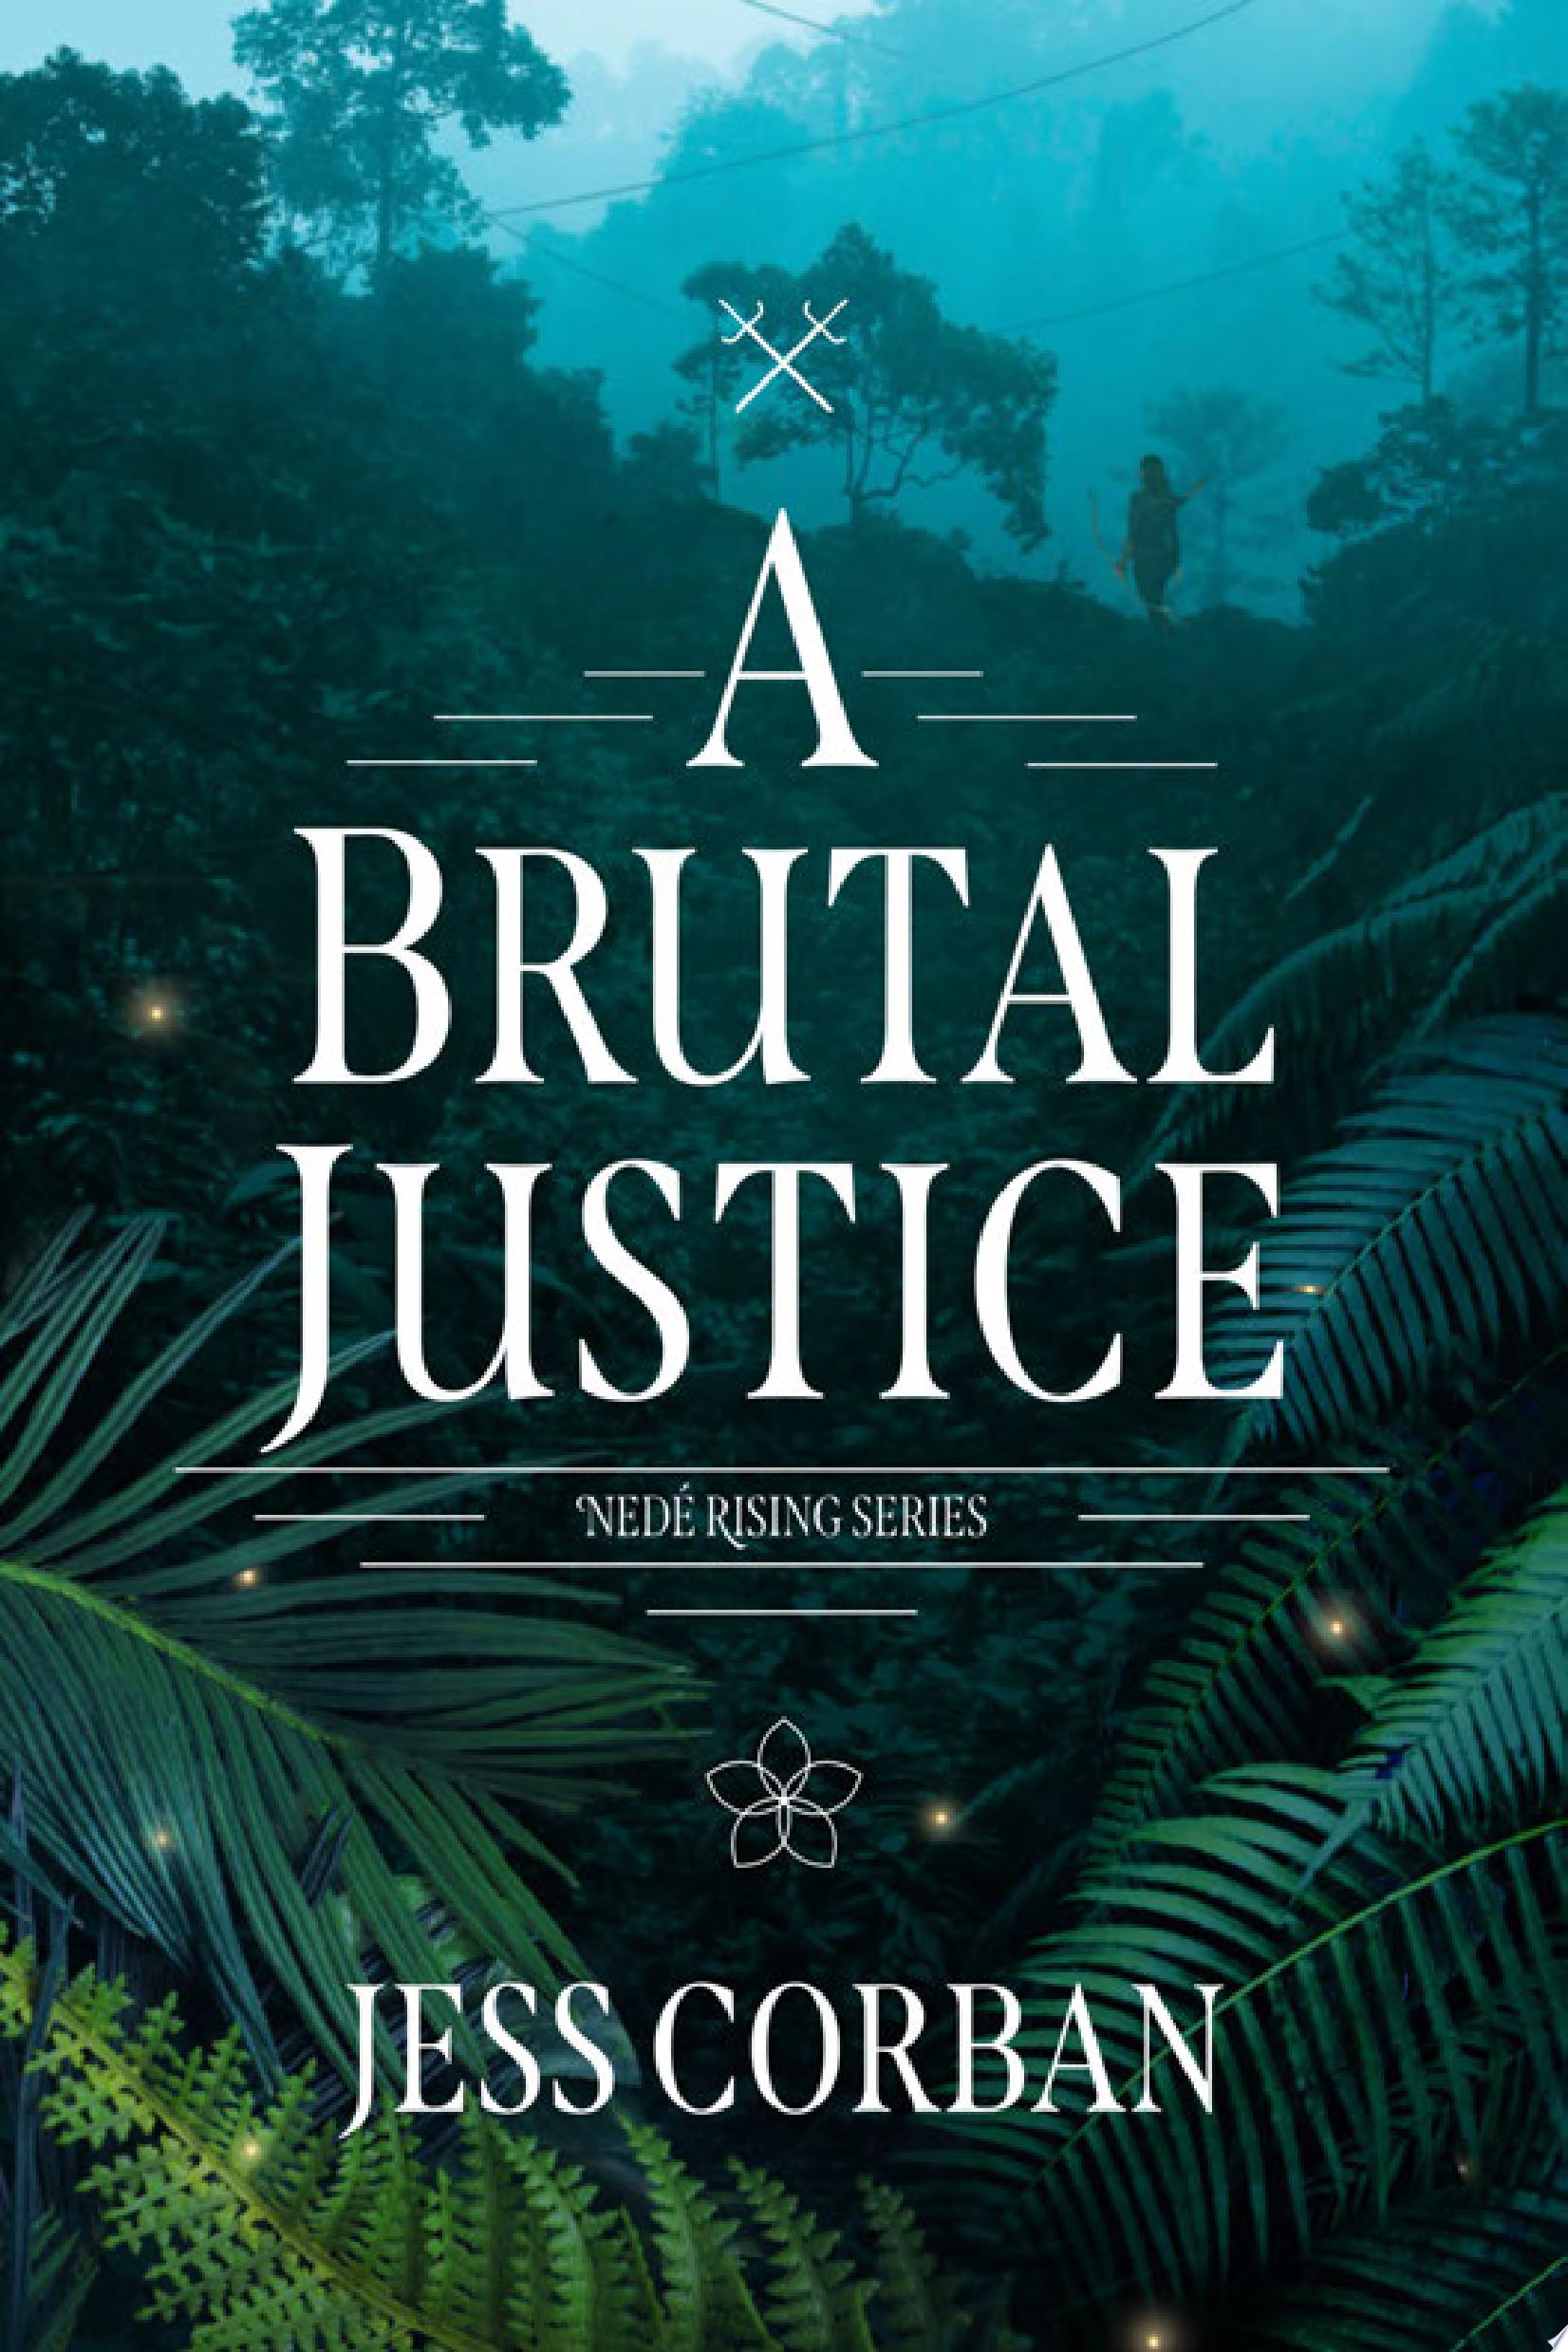 Image for "A Brutal Justice"